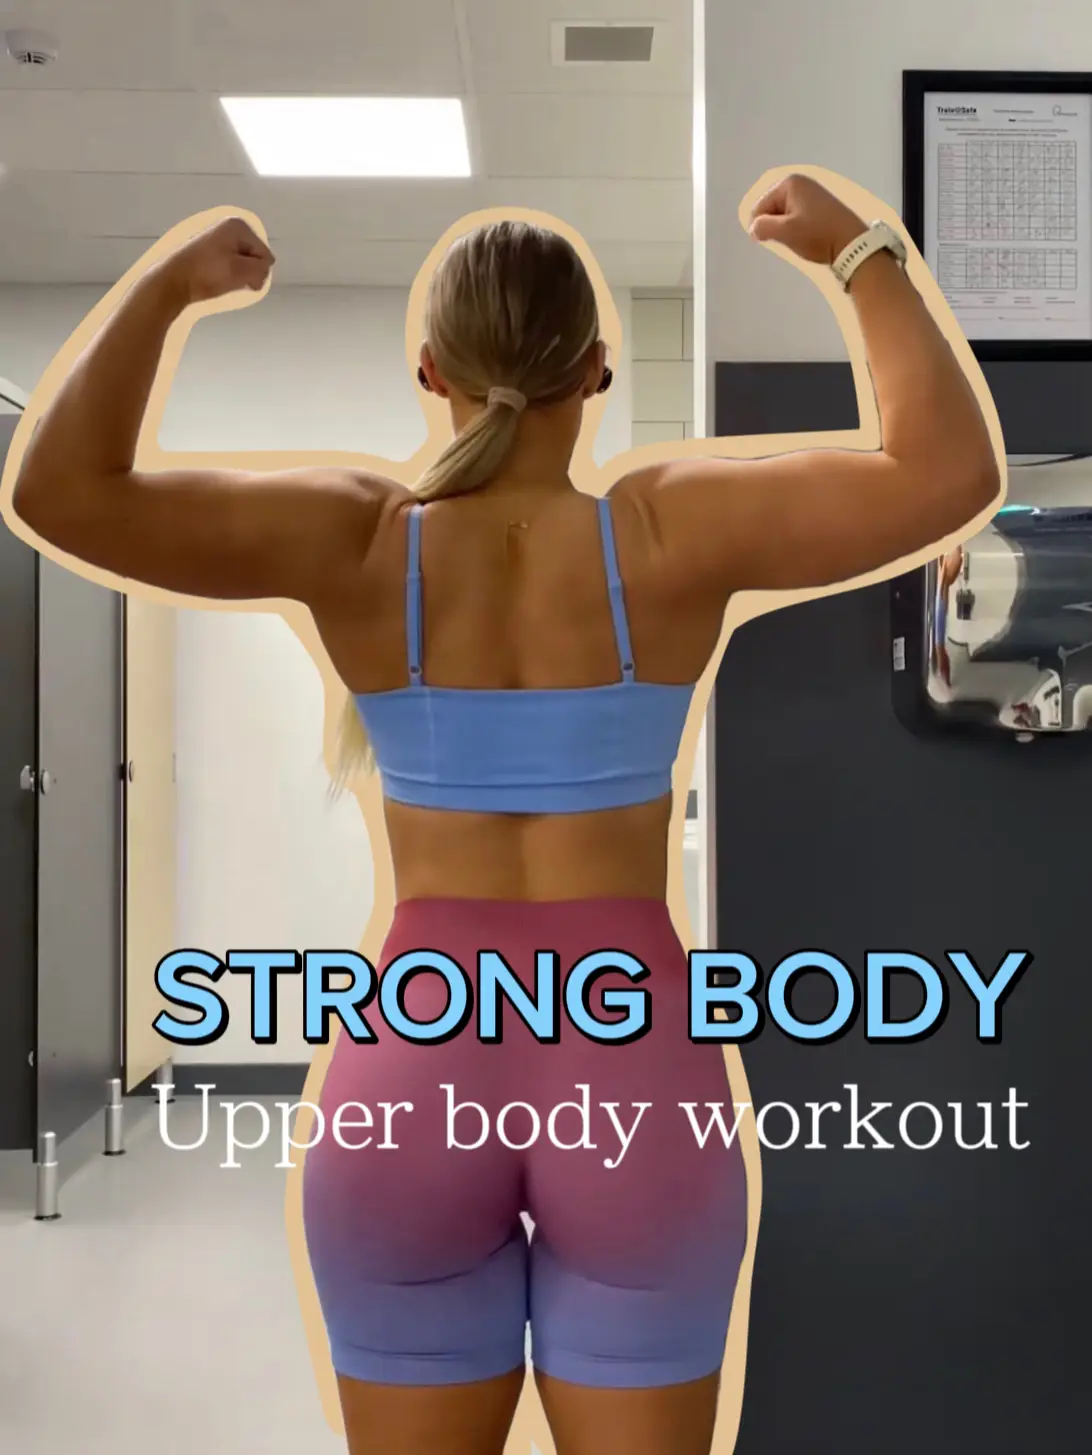 V shape waist workout for stronger body 